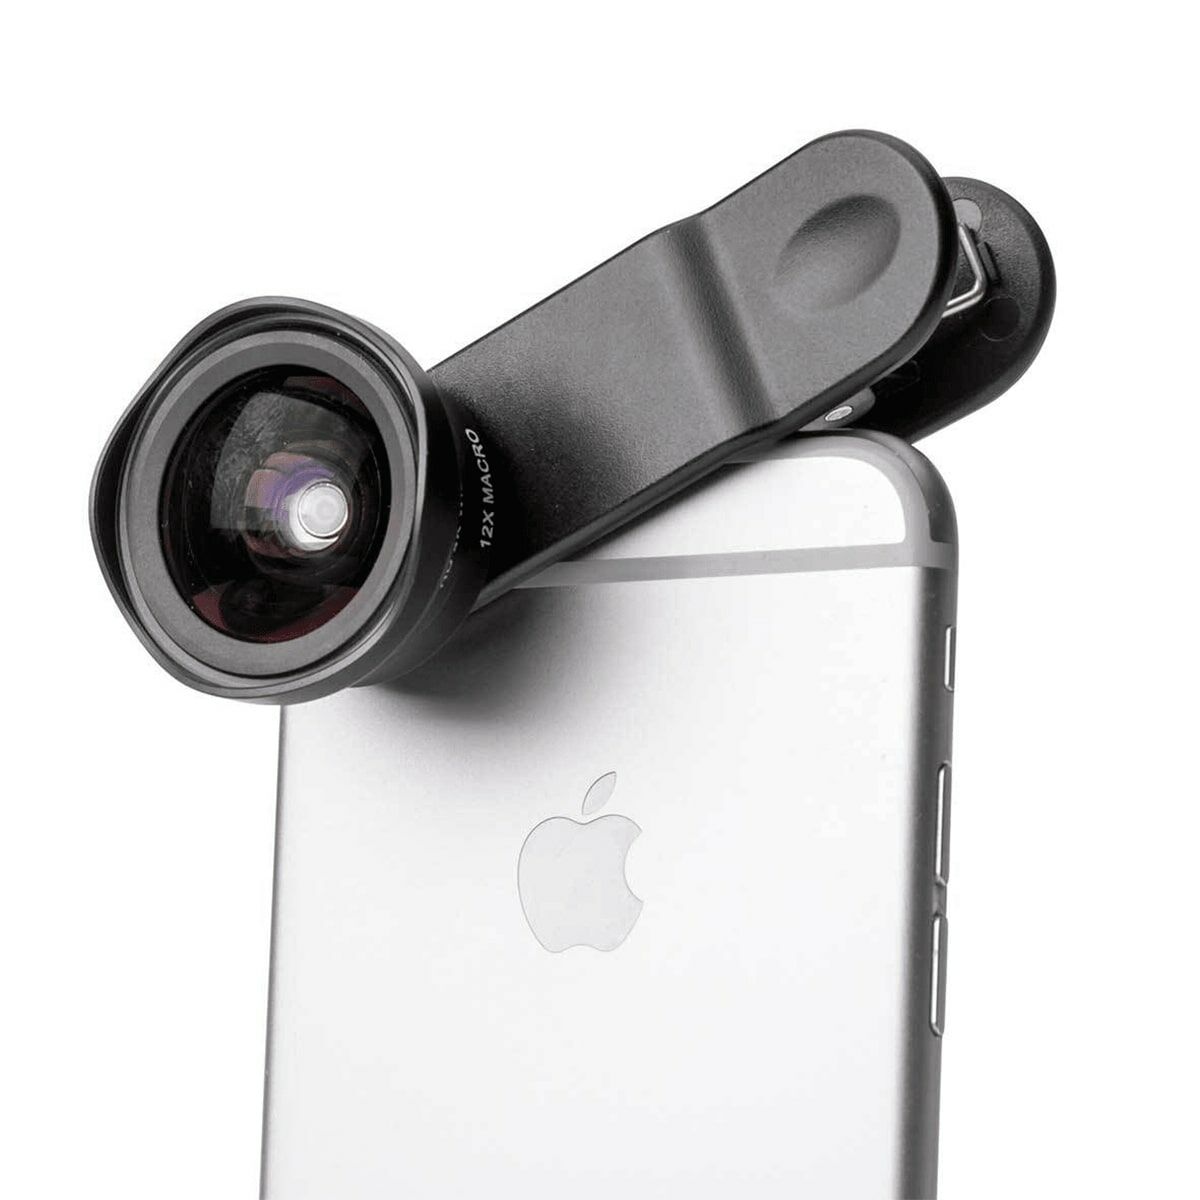 Occhiali Universali per Smartphone Pictar Smart 16 mm Macro